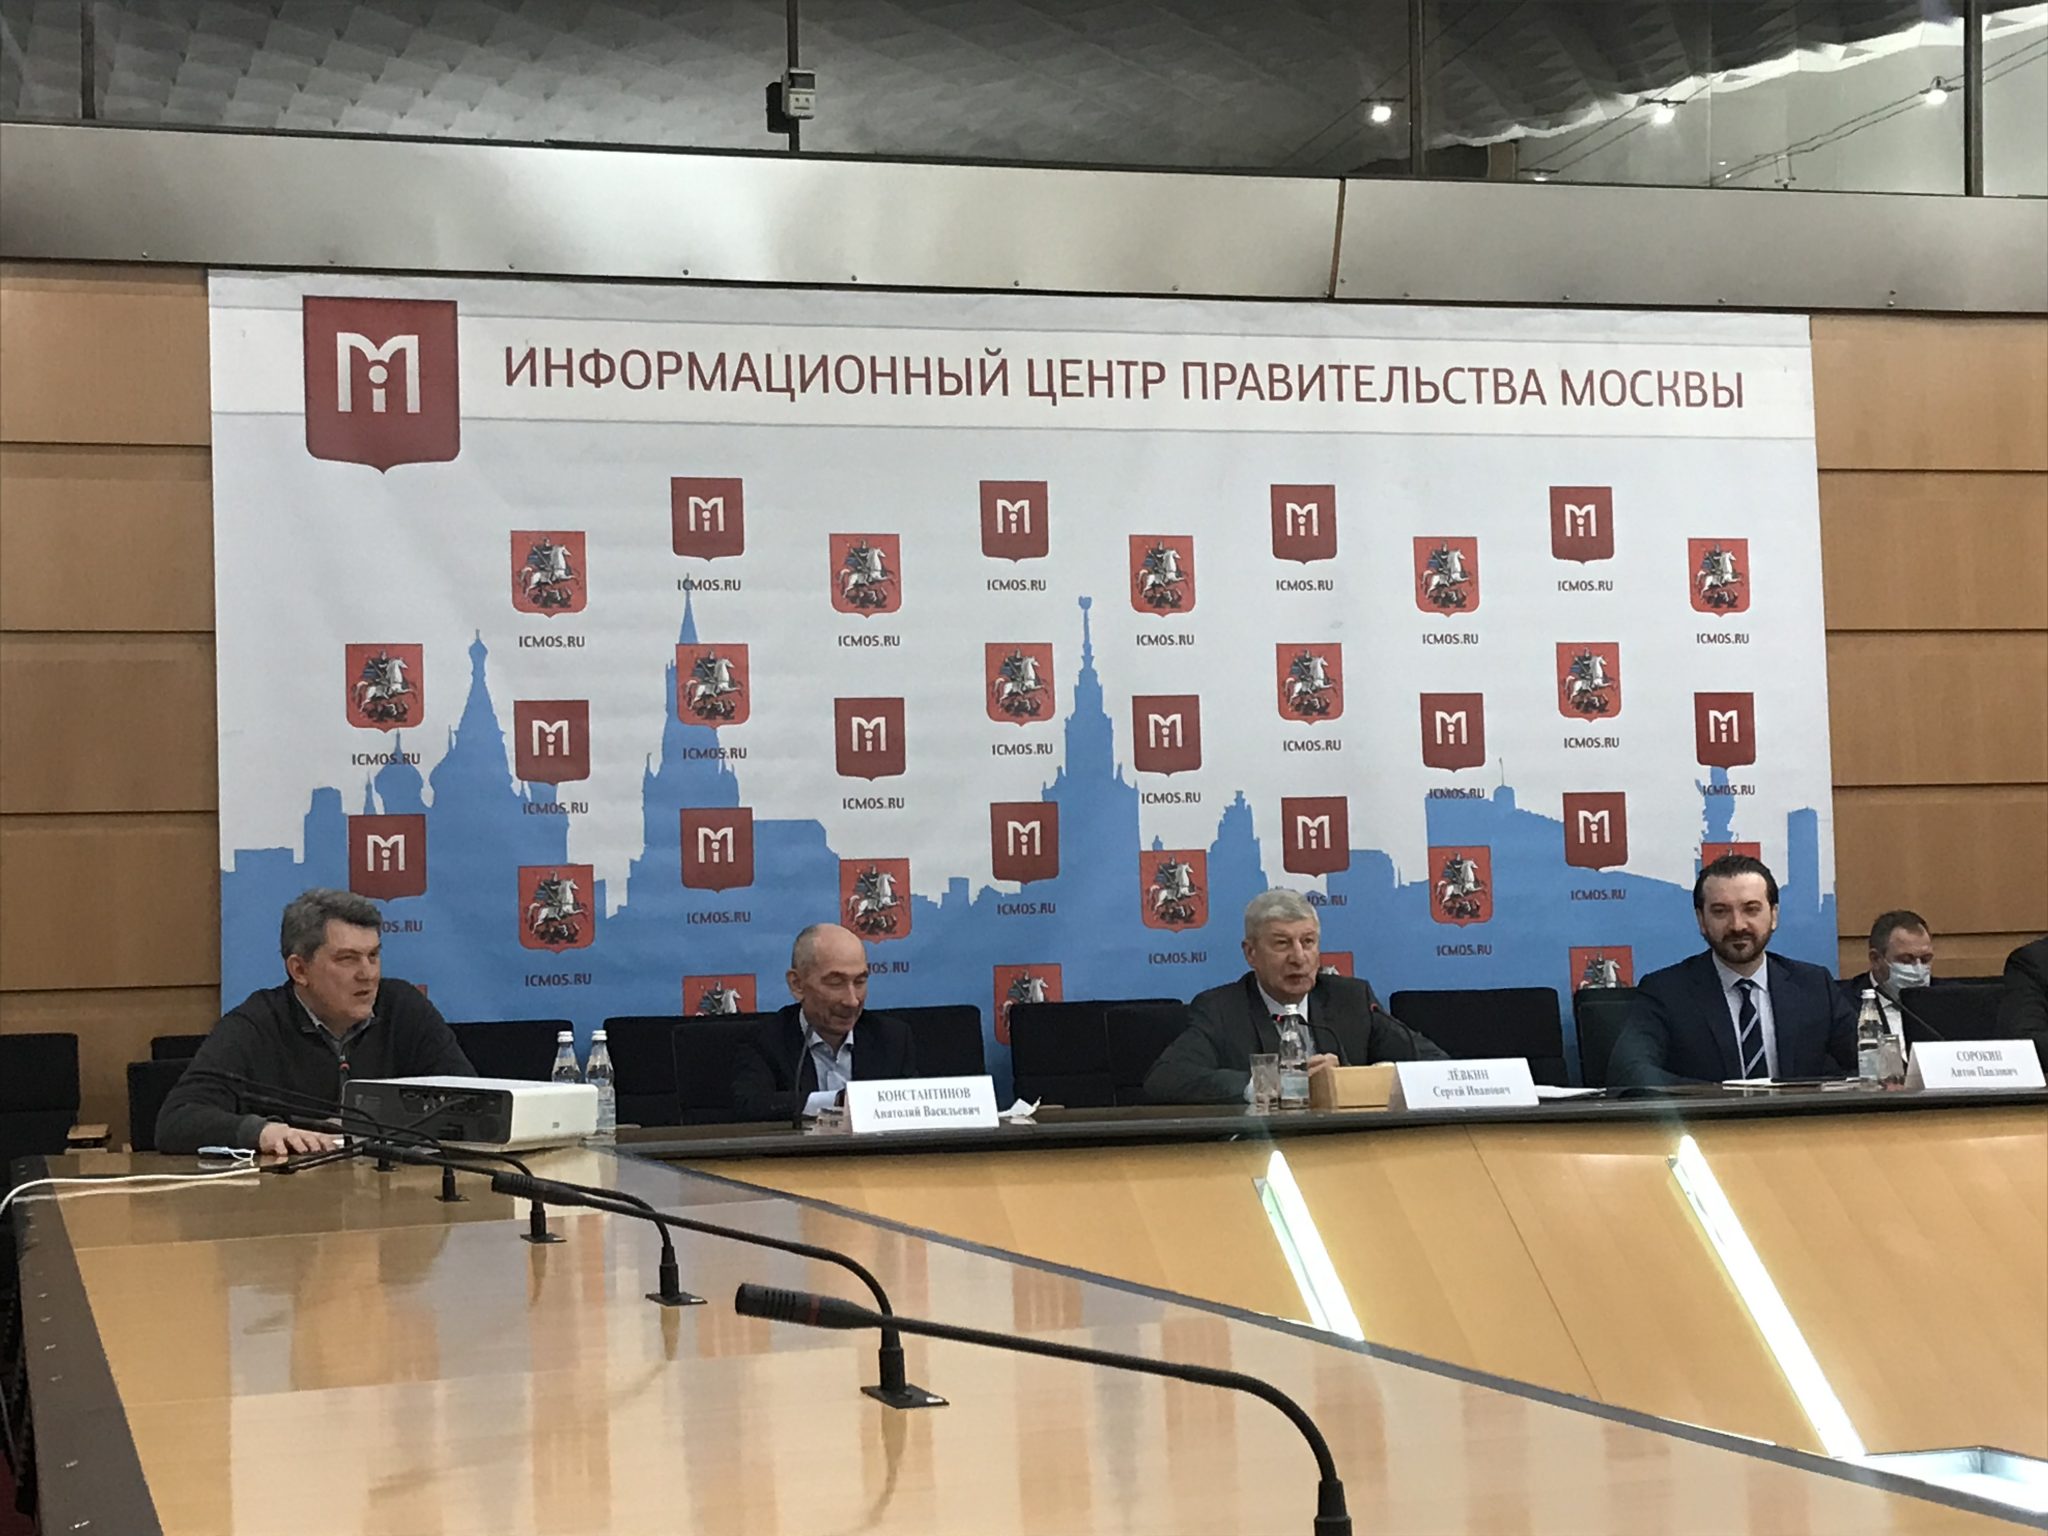 Этапы и сроки переселения по программе реновации назвали в Информационном центре Правительства Москвы